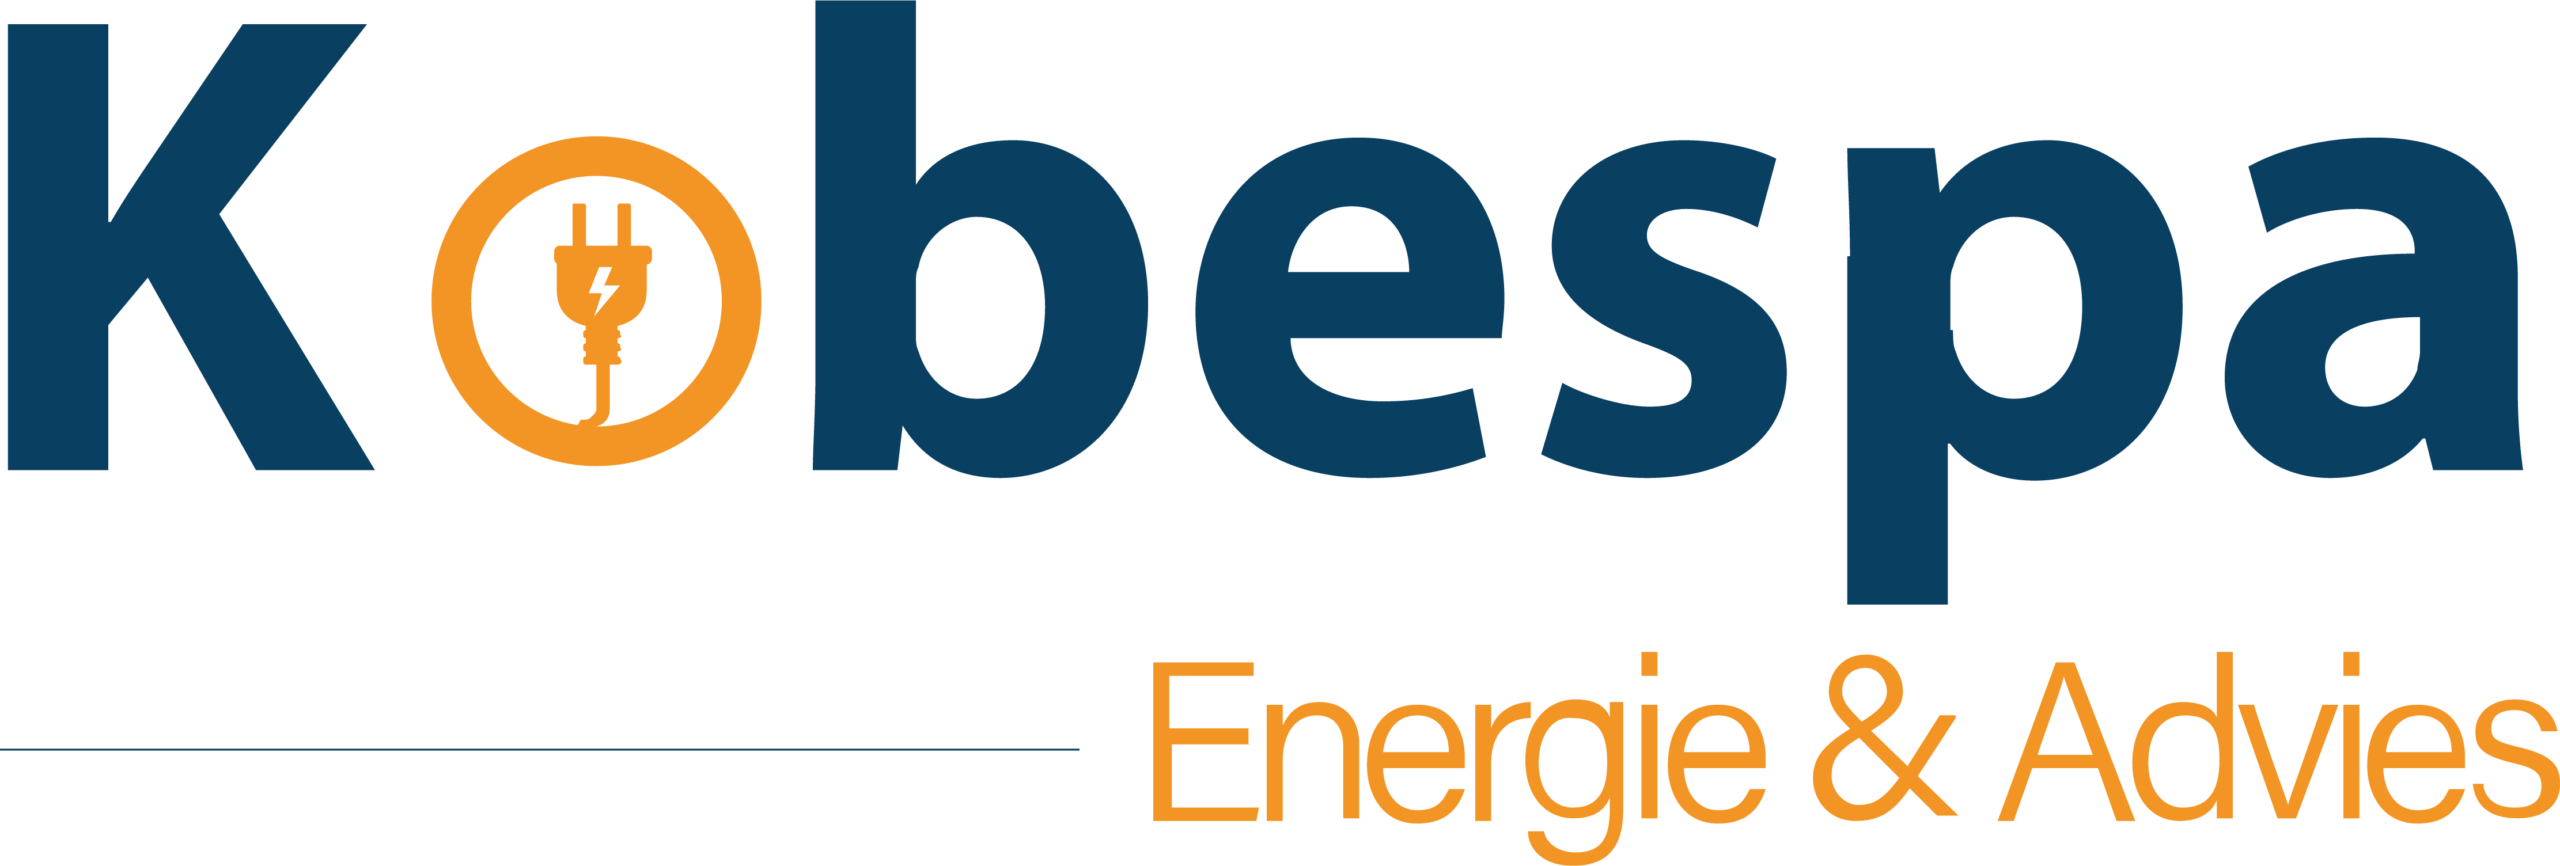 Kobespa Energie & Advies